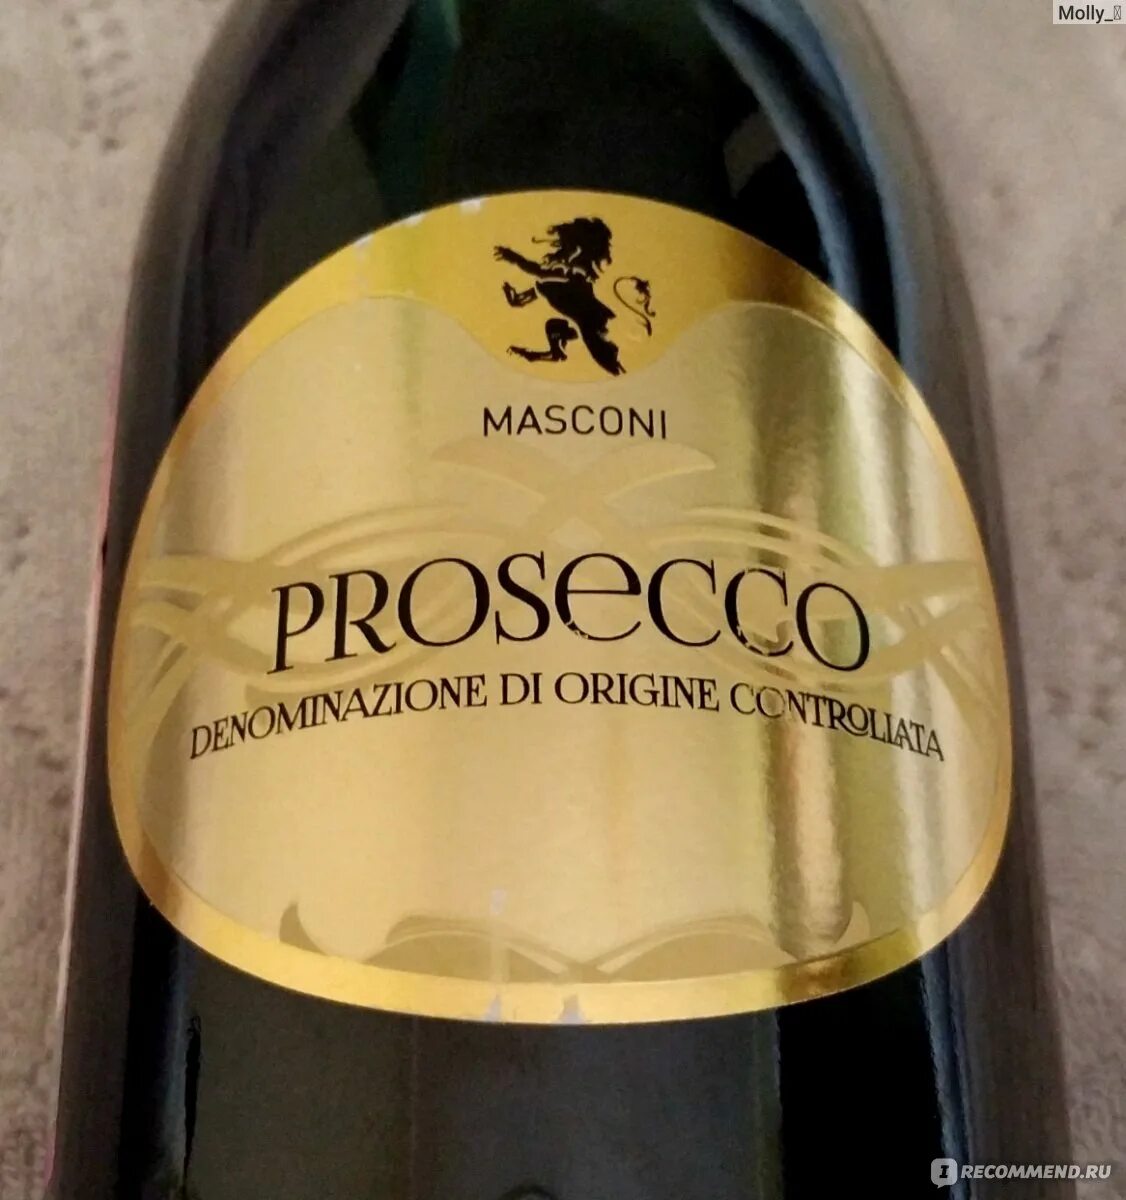 Prosecco denominazione origine controllata. Вино игристое маскони Просекко. Маскони Просекко вино игристое бел. Брют. Вино Просекко маскони doc. Вино игристое Просекко маскони белое брют.